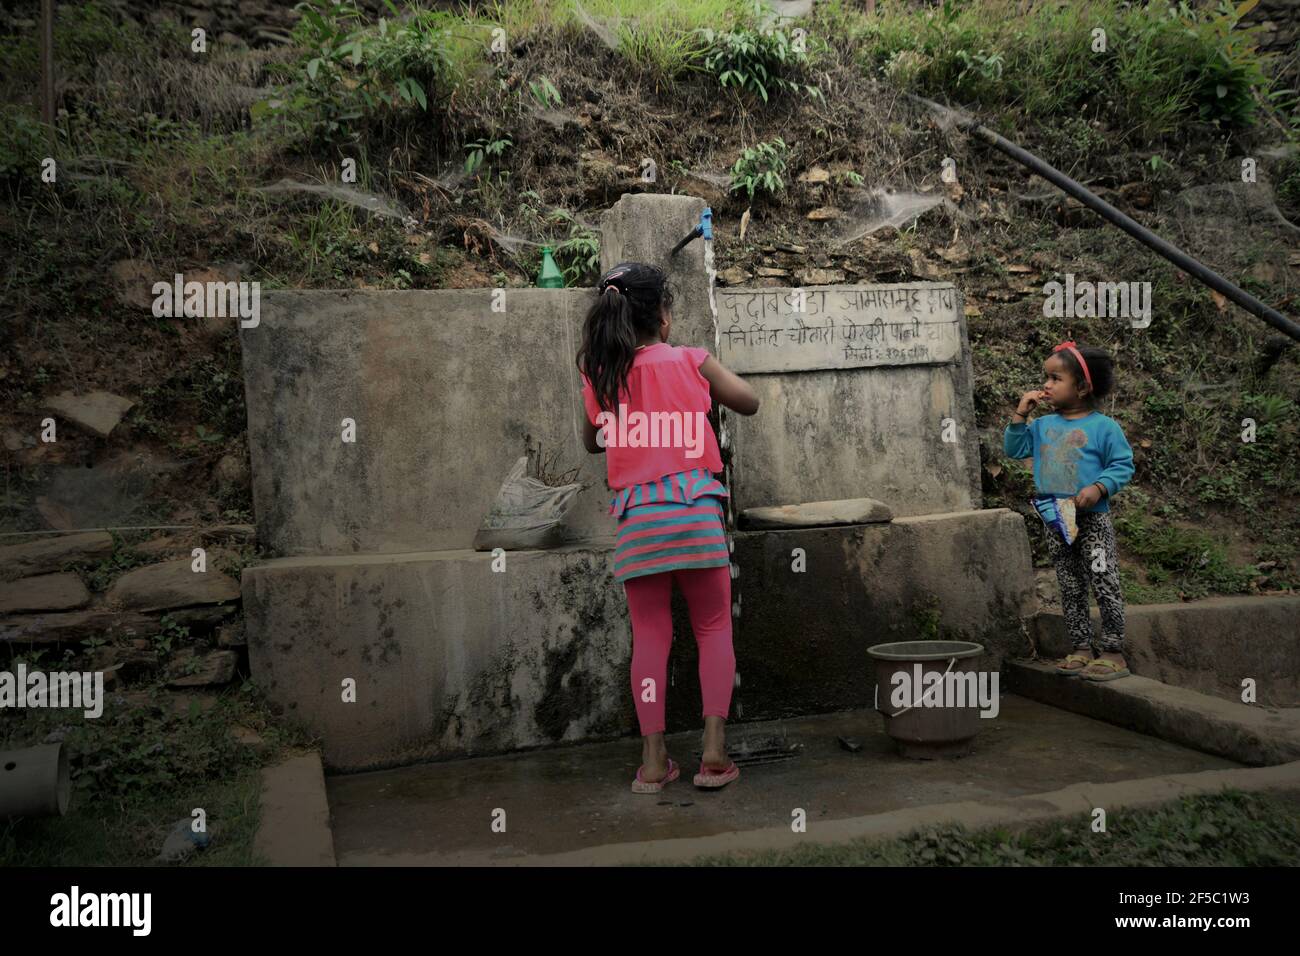 Un enfant et sa petite sœur prennent de l'eau dans une installation commune d'eau dans le village de Damdame, dans la région de Panchase, dans l'État de Gandaki Pradesh, au Népal. En 2017, environ 4.2 milliards de personnes, soit 55 % de la population mondiale, n'avaient pas accès à des services d'assainissement gérés en toute sécurité, selon ONU Water dans leur Résumé Progress Update 2021, publié le 1er mars 2021 à Genève. Pendant ce temps, plus de 3 milliards de personnes dans le monde sont actuellement en danger en utilisant l'eau parce que la santé de leur source d'eau (rivières, lacs ou eaux souterraines) est inconnue en raison du manque de données sur la qualité de l'eau. Banque D'Images